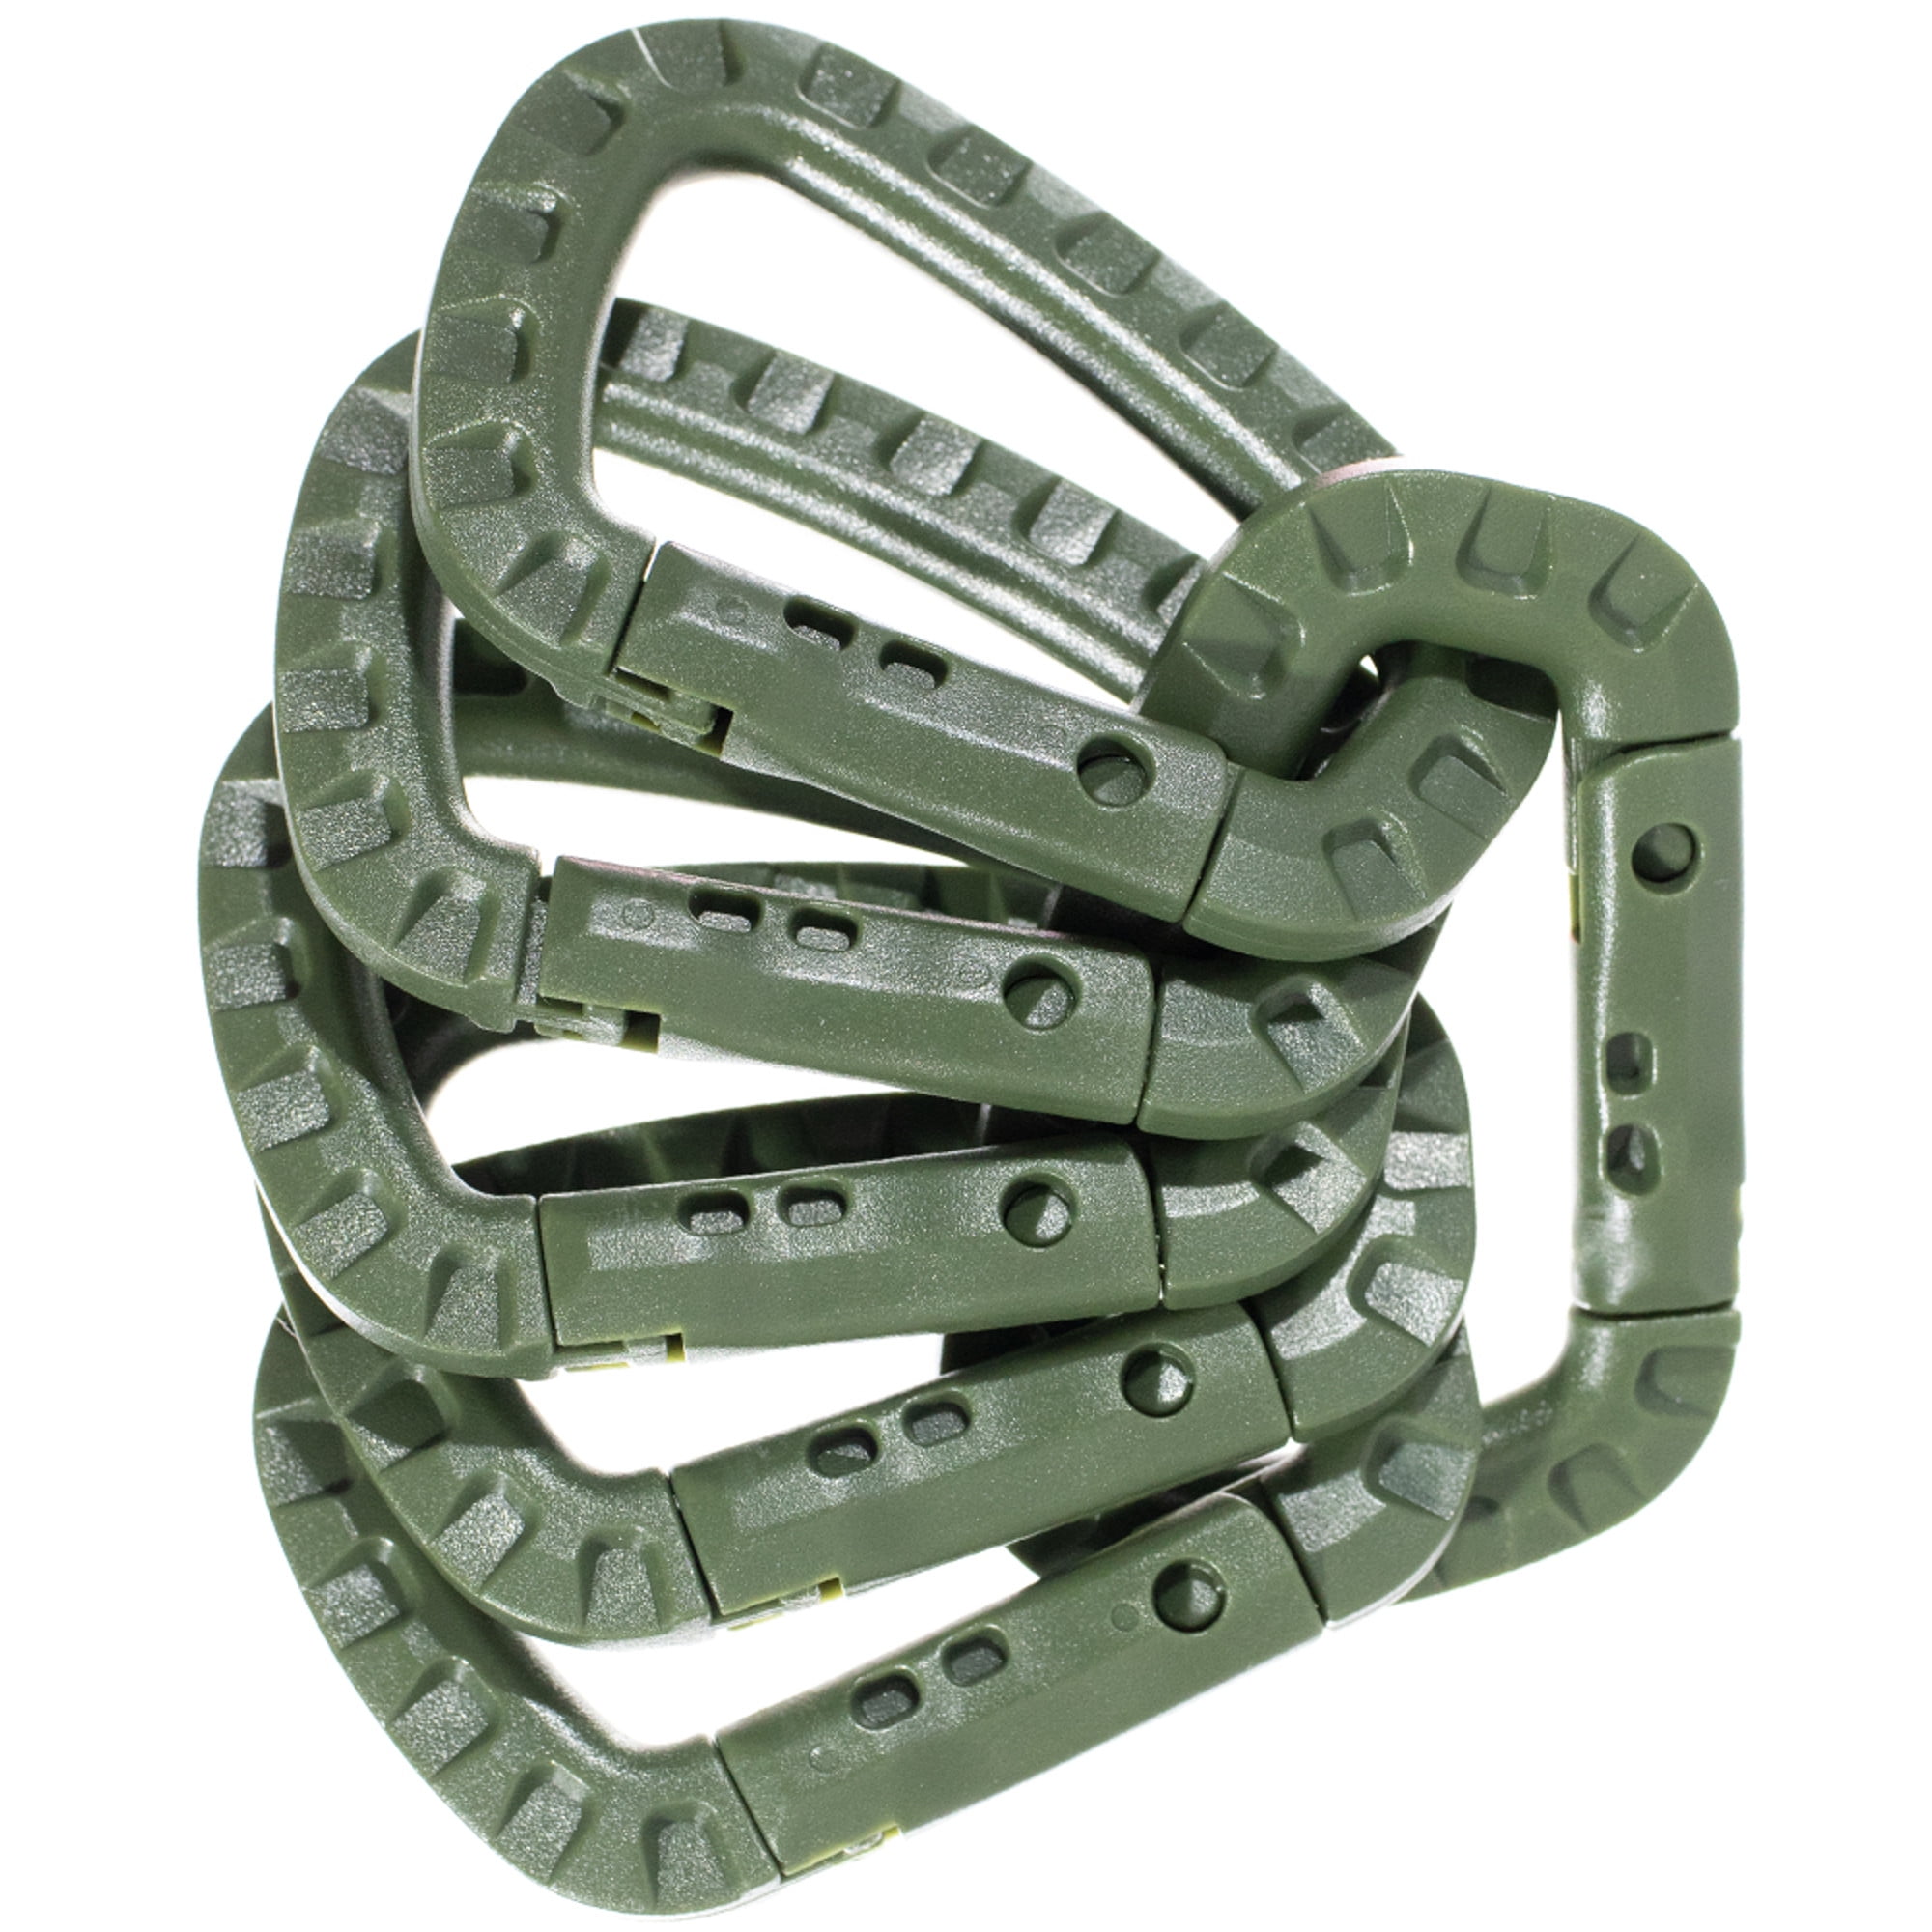 Tactical Buckle Carabiner Keyring Belt Backpack Hanging KeyChain Clip Hook New 